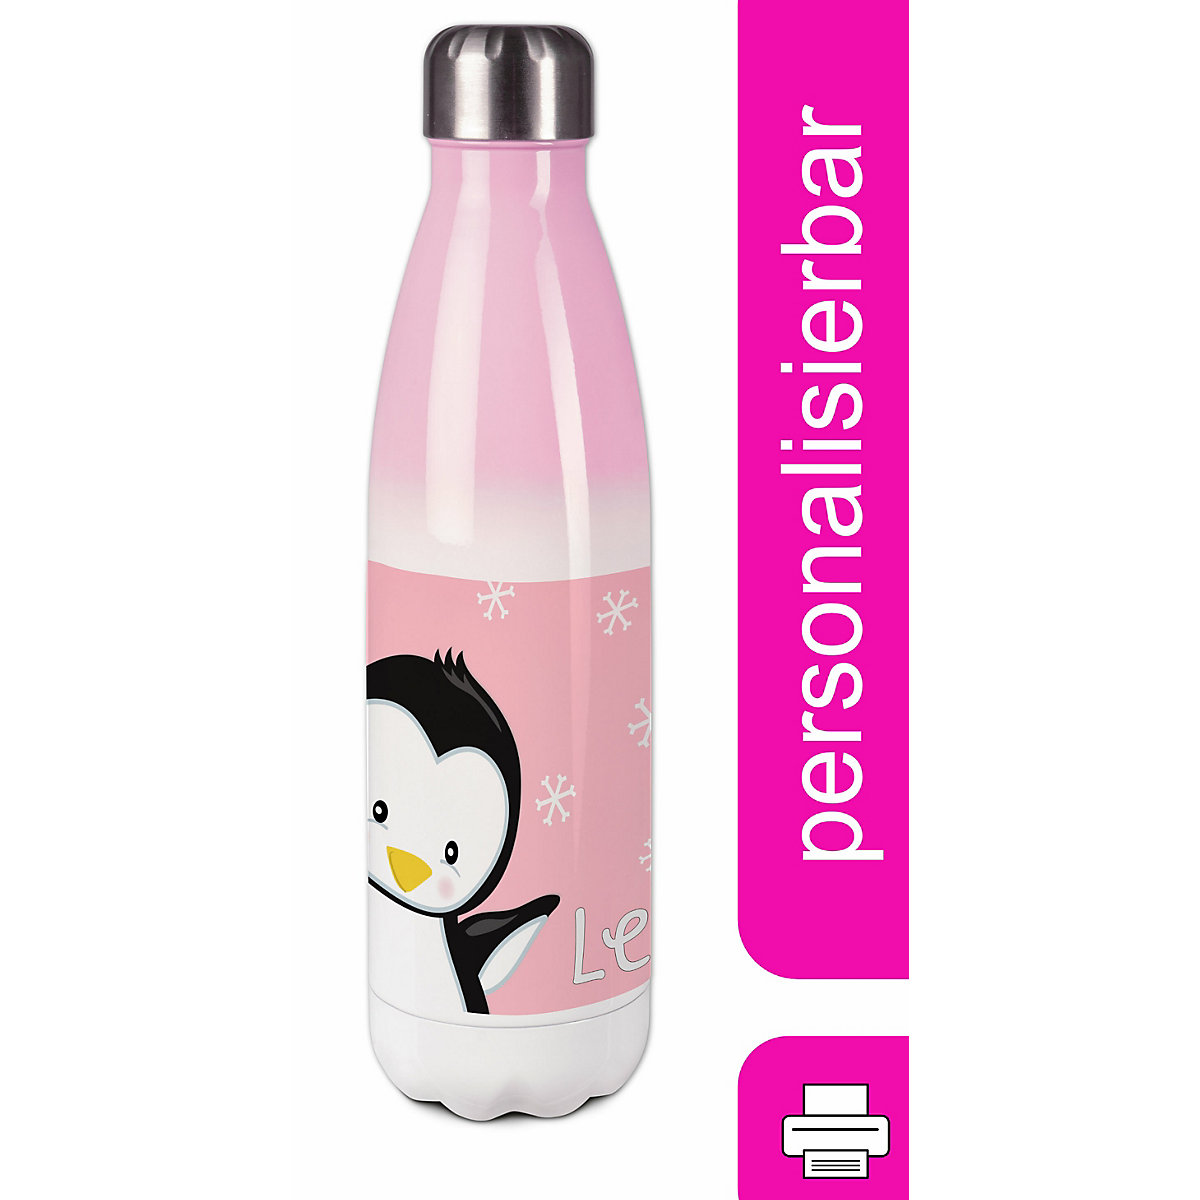 CreaDesign Edelstahl Kinder Thermoflasche / Trinkflasche bunt Pinguin Farbe rosa Spülmaschinenfest Auslaufsicher Bruchfest Doppelwandig Für Heißgetränke geeignet Mit Deckel Isoliert